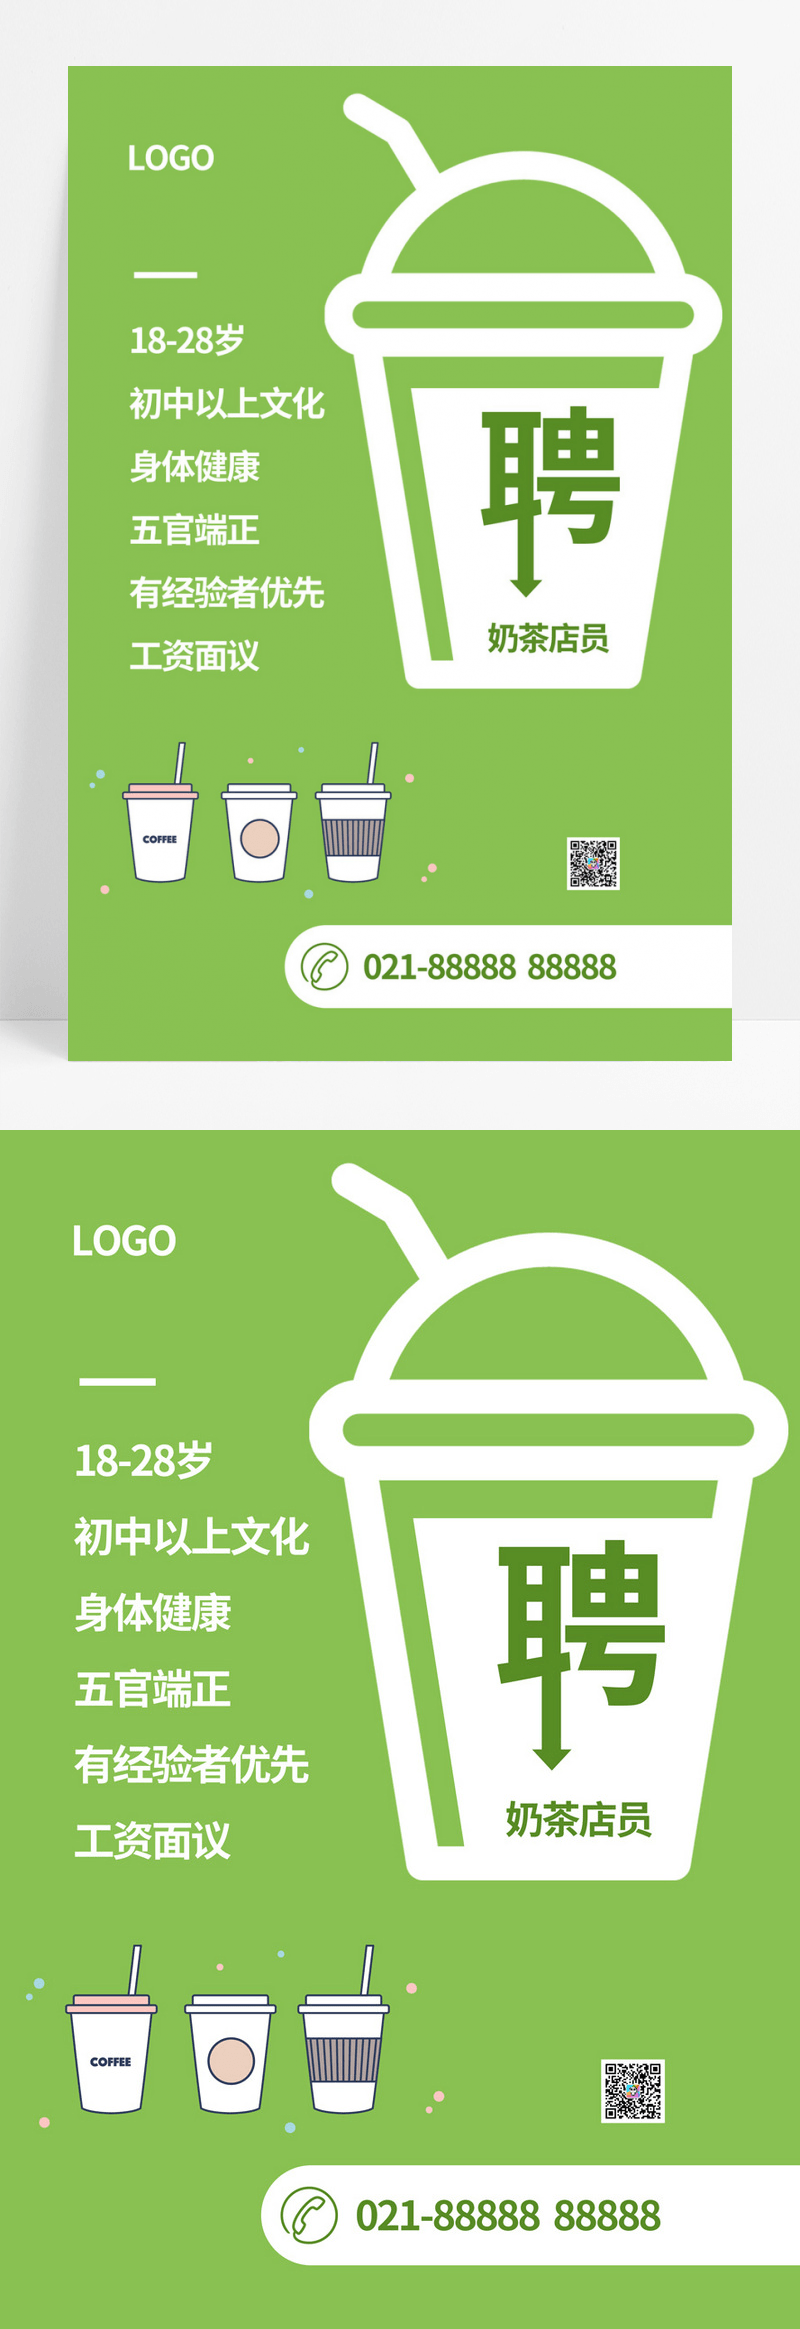  绿色卡通奶茶店招聘海报奶茶招聘设计